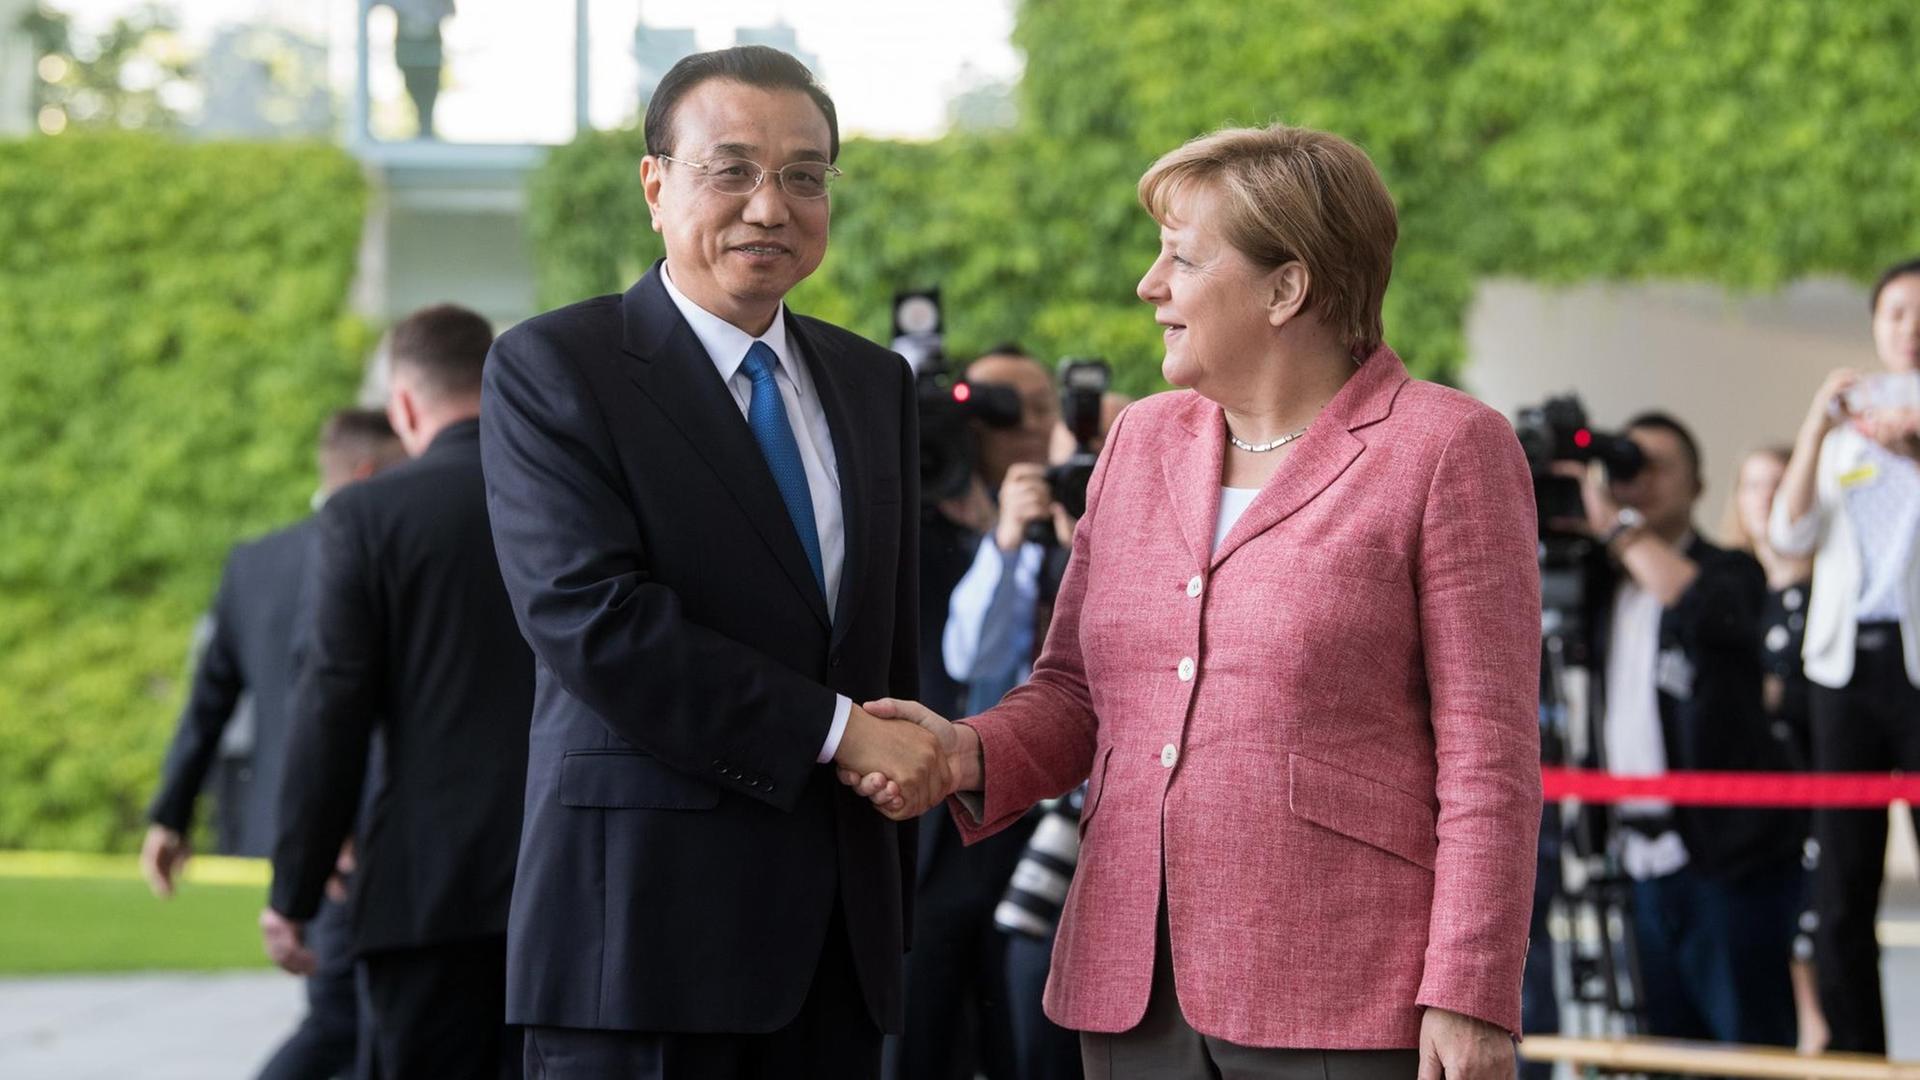 Bundeskanzlerin Angela Merkel (r, CDU) begrüßt Li Keqiang, Ministerpräsident der Volksrepublik China vor dem Bundeskanzleramt in Berlin mit militärischen Ehren.